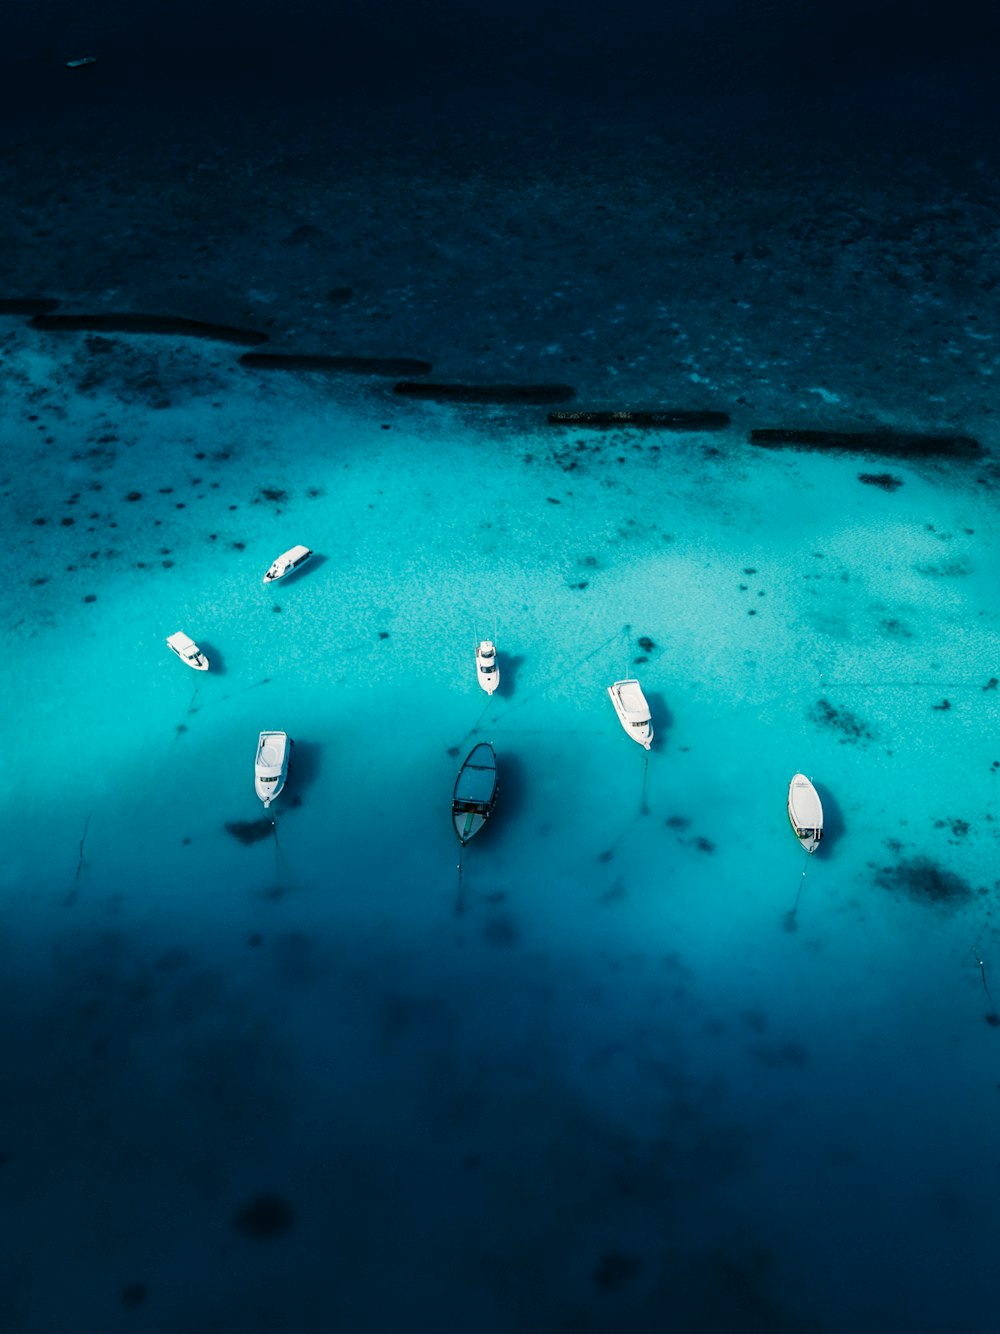 Fotografía de vista aérea de un barco en el cuerpo de agua